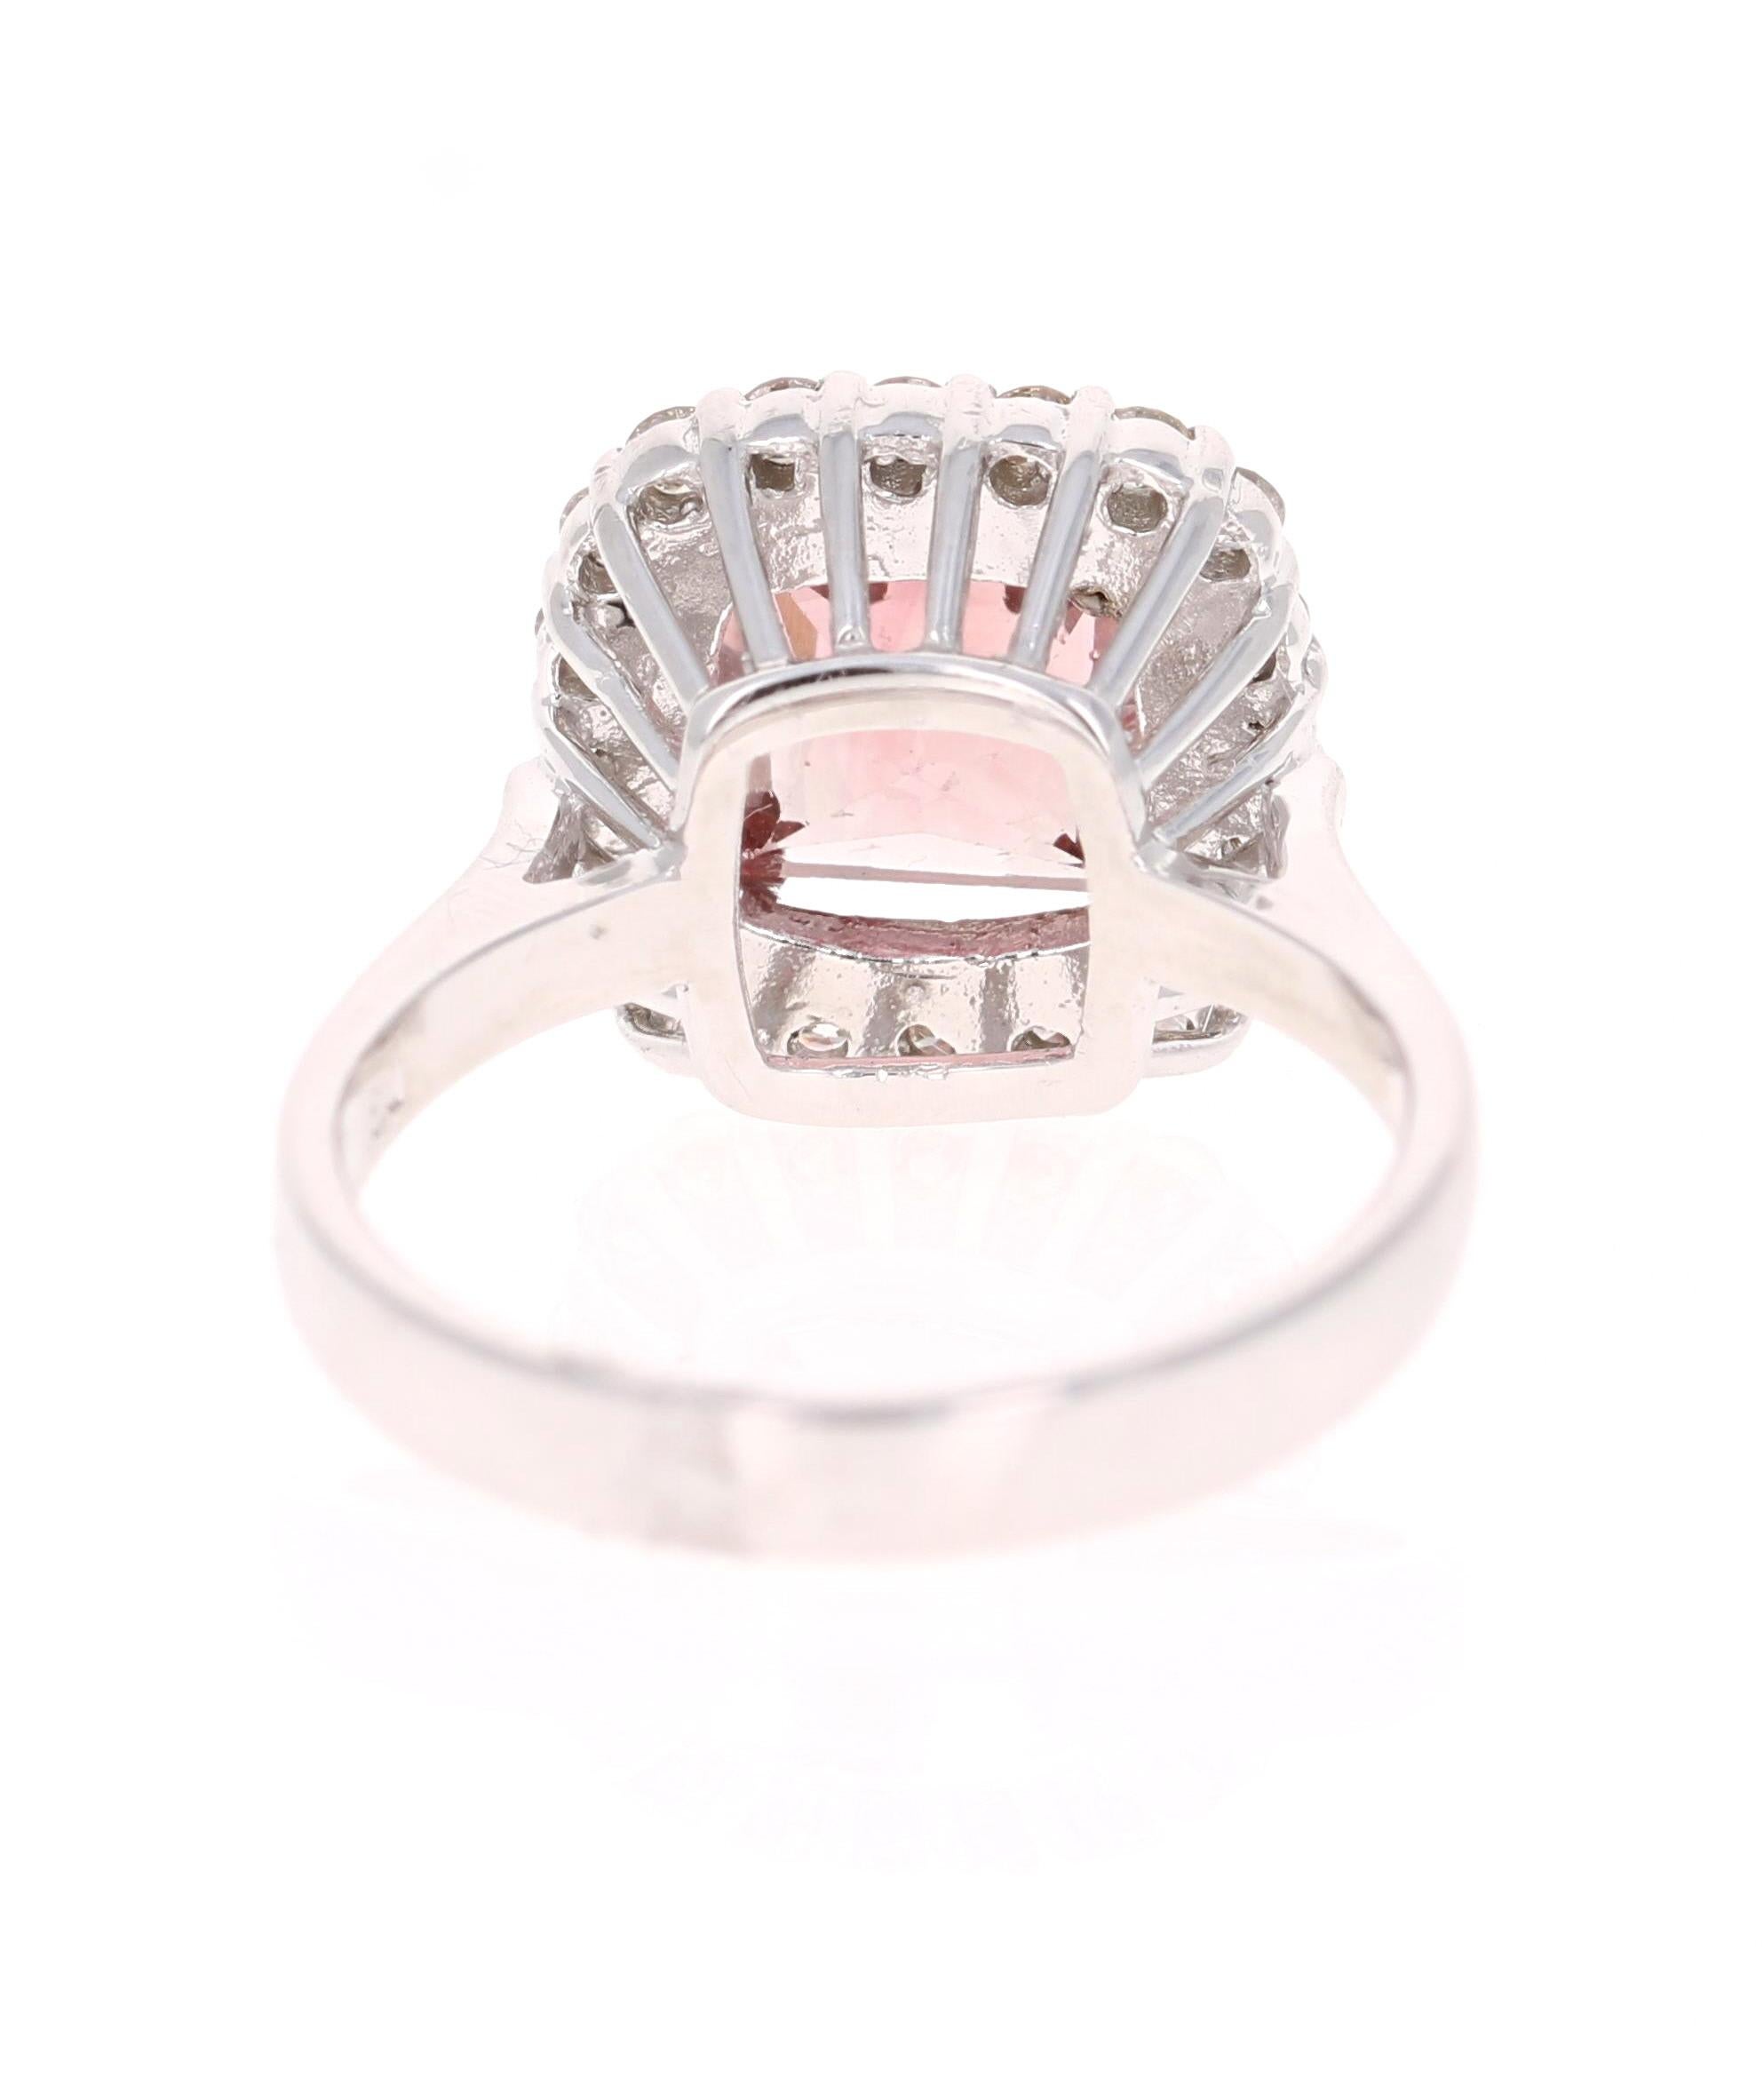 Princess Cut 3.89 Carat Pink Tourmaline Diamond 14 Karat White Gold Ring